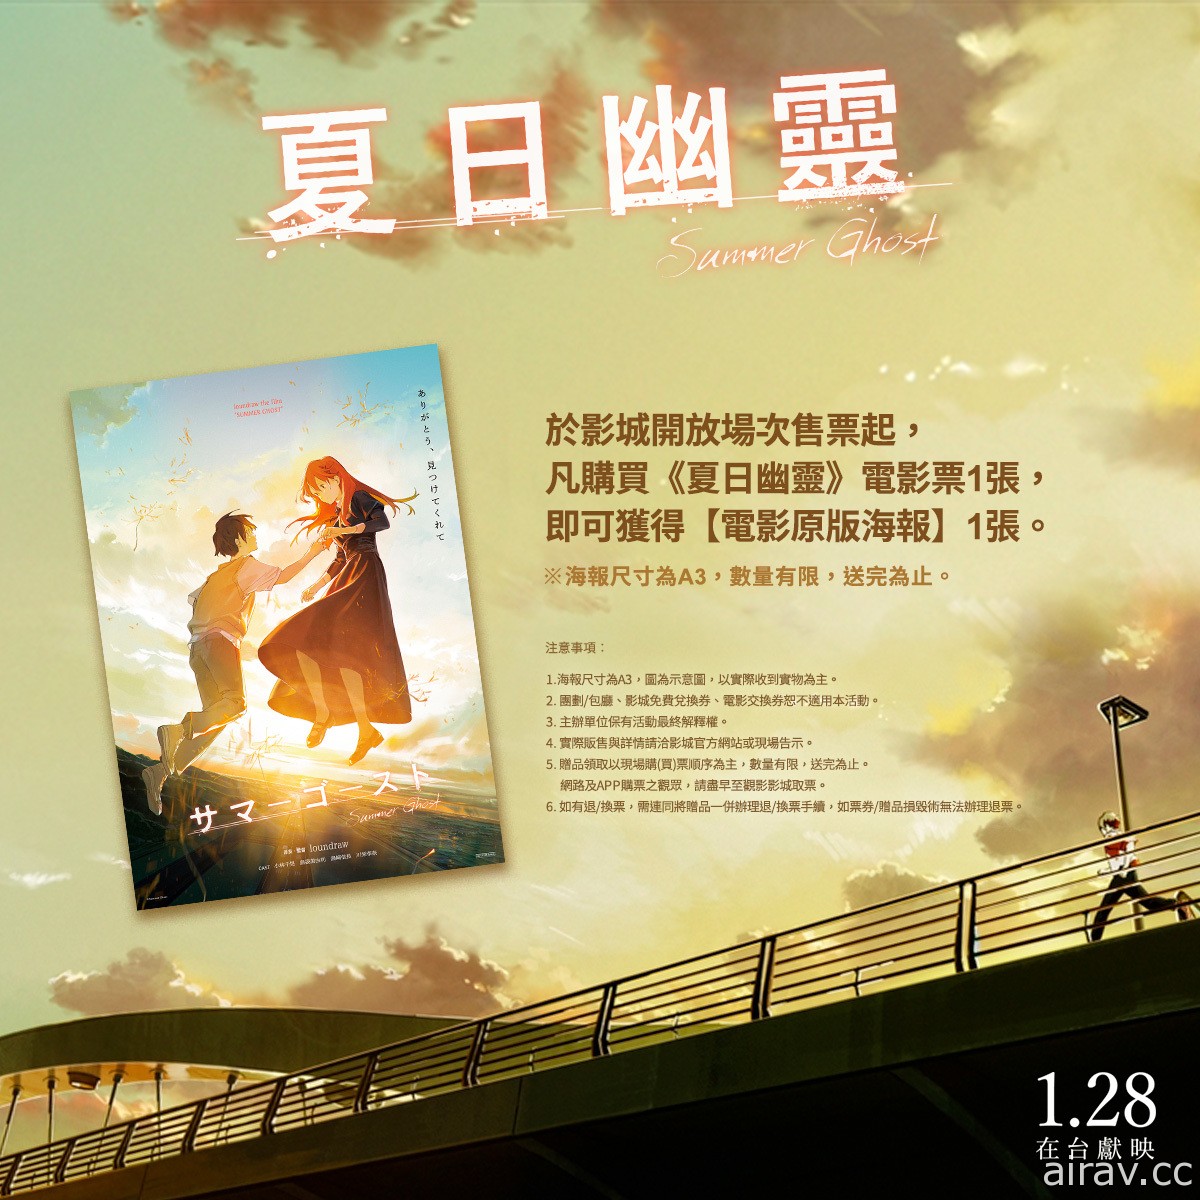 《夏日幽灵》释出中文版预告 预售套票以及入场观影特典资讯同步公开